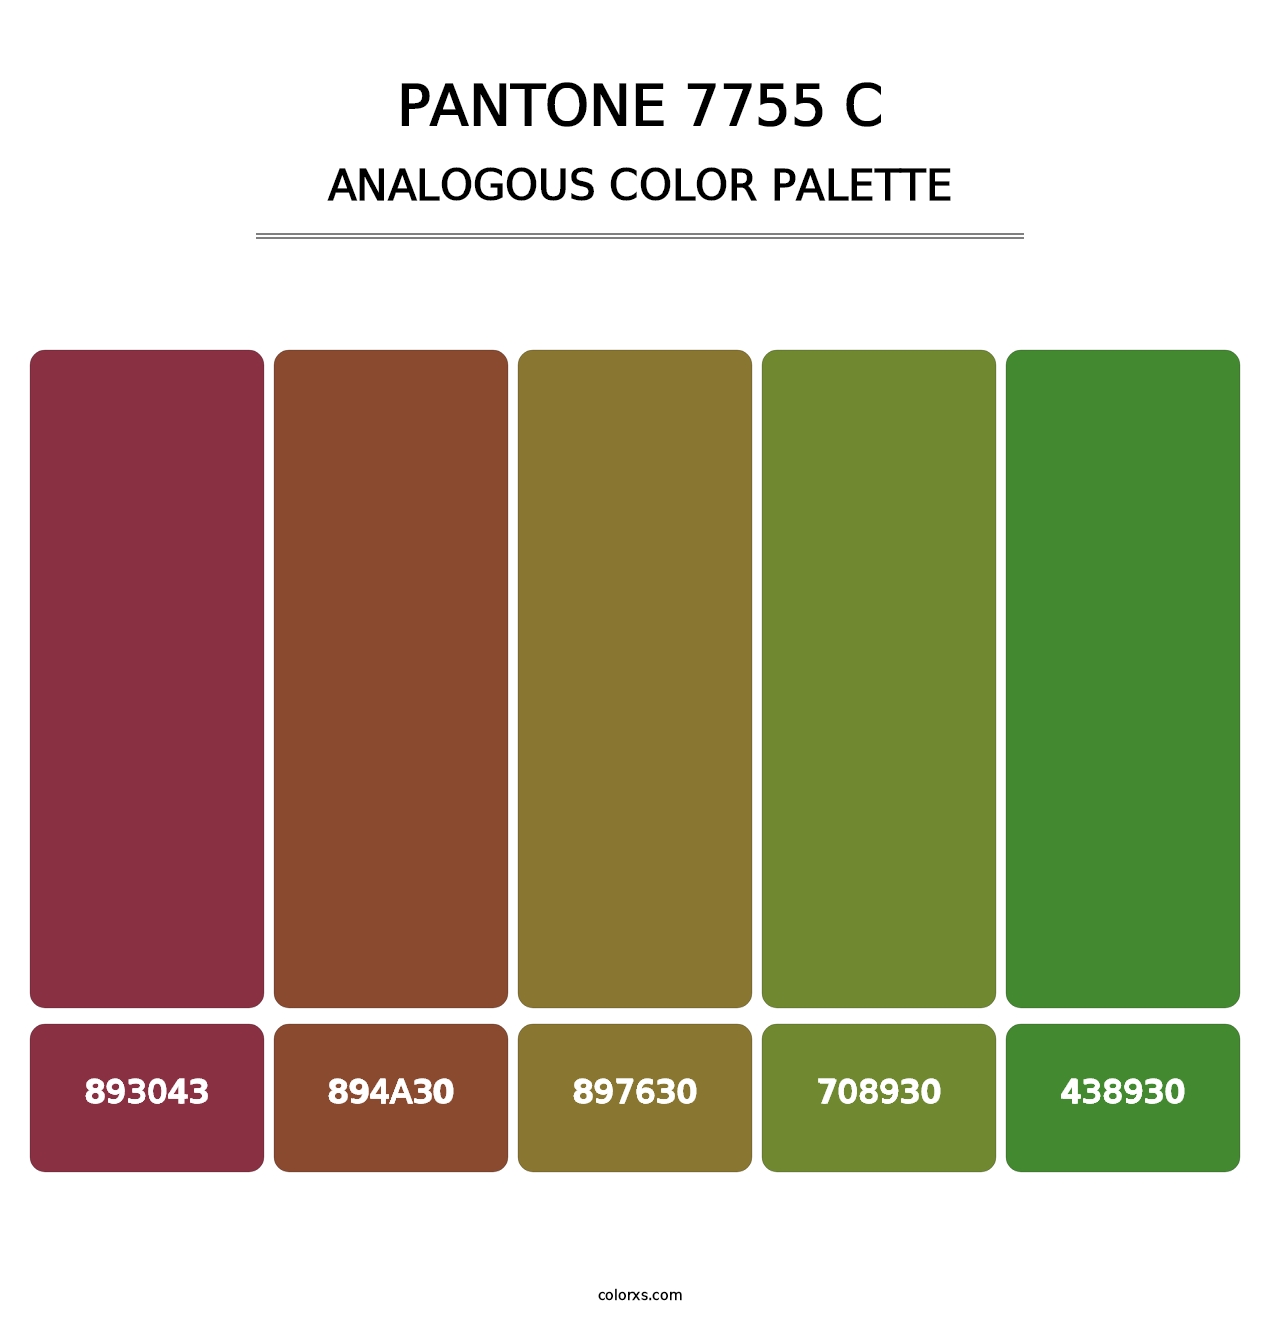 PANTONE 7755 C - Analogous Color Palette